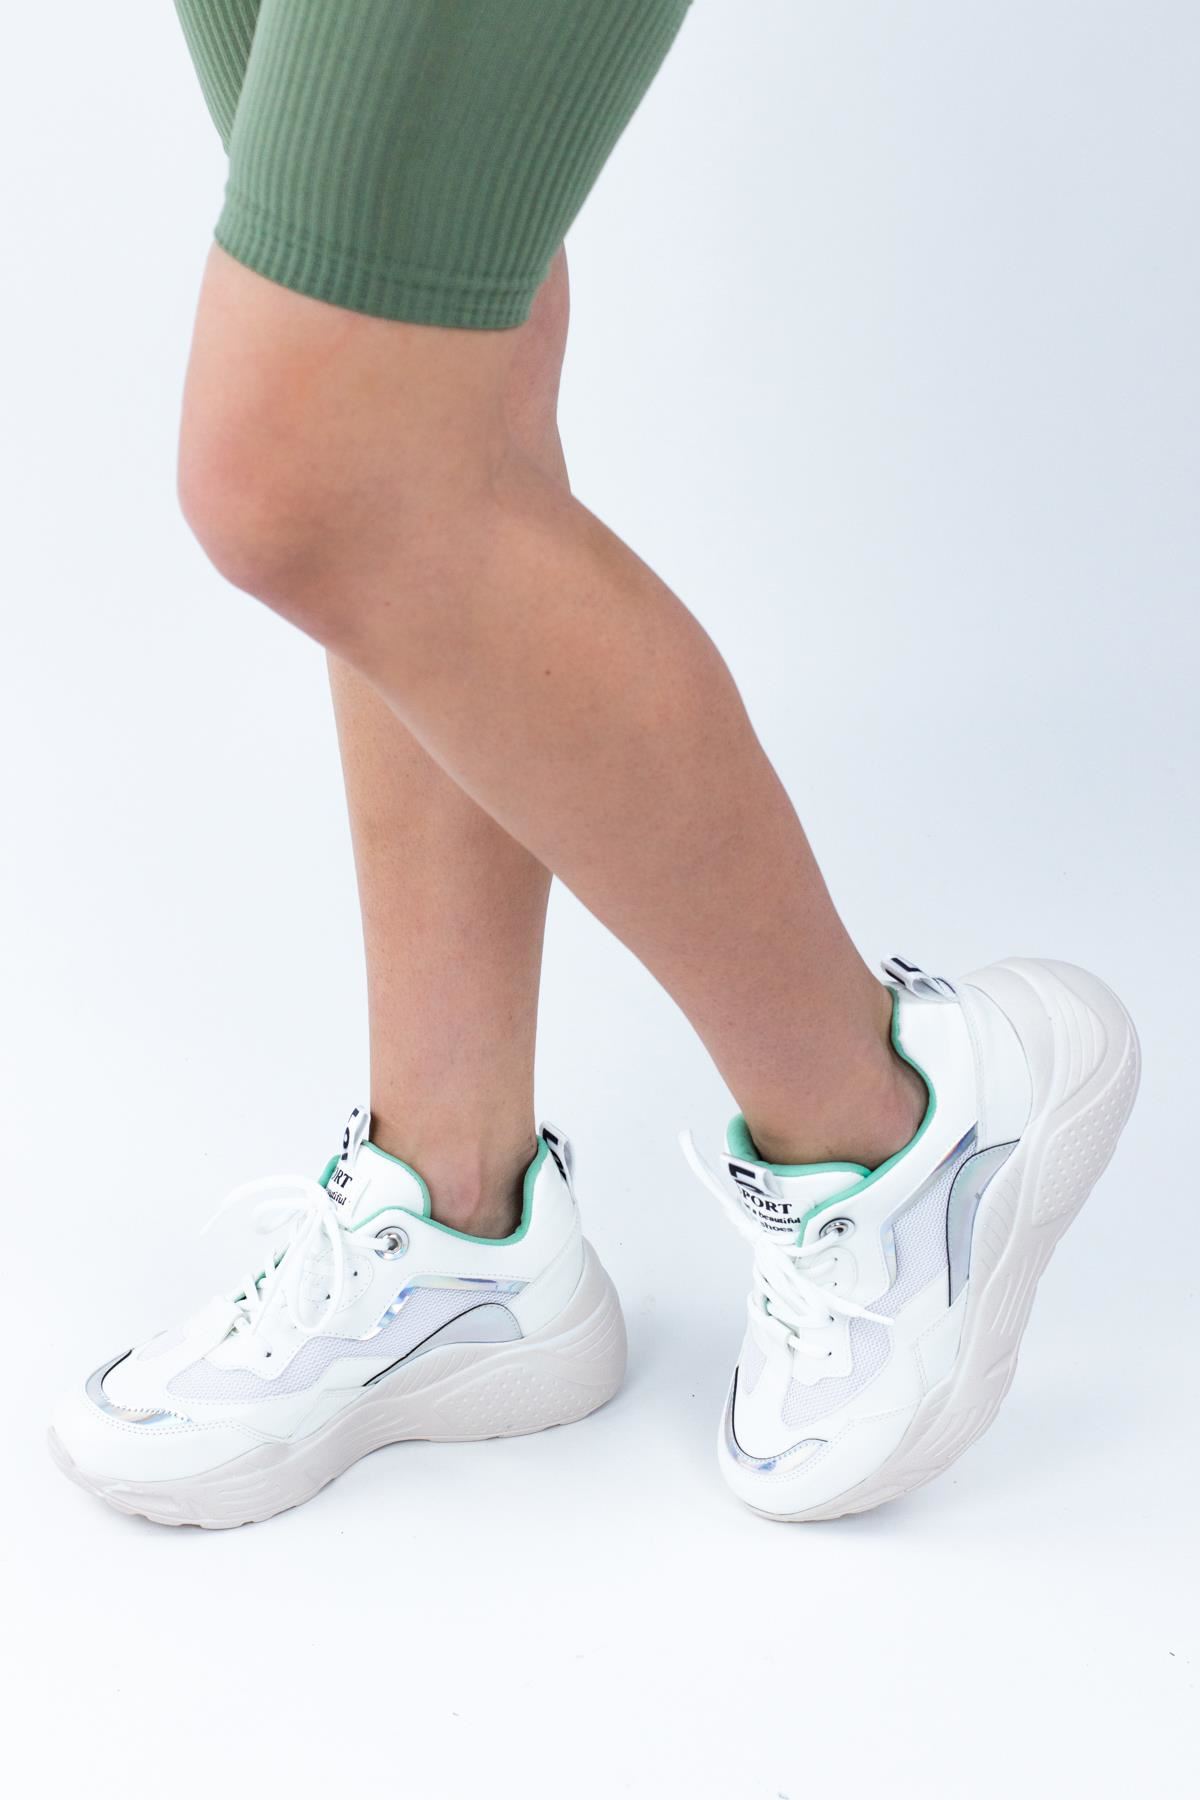 Vivus Kadın Dolgu Topuklu Spor Ayakkabı Sneaker BEYAZ CİLT